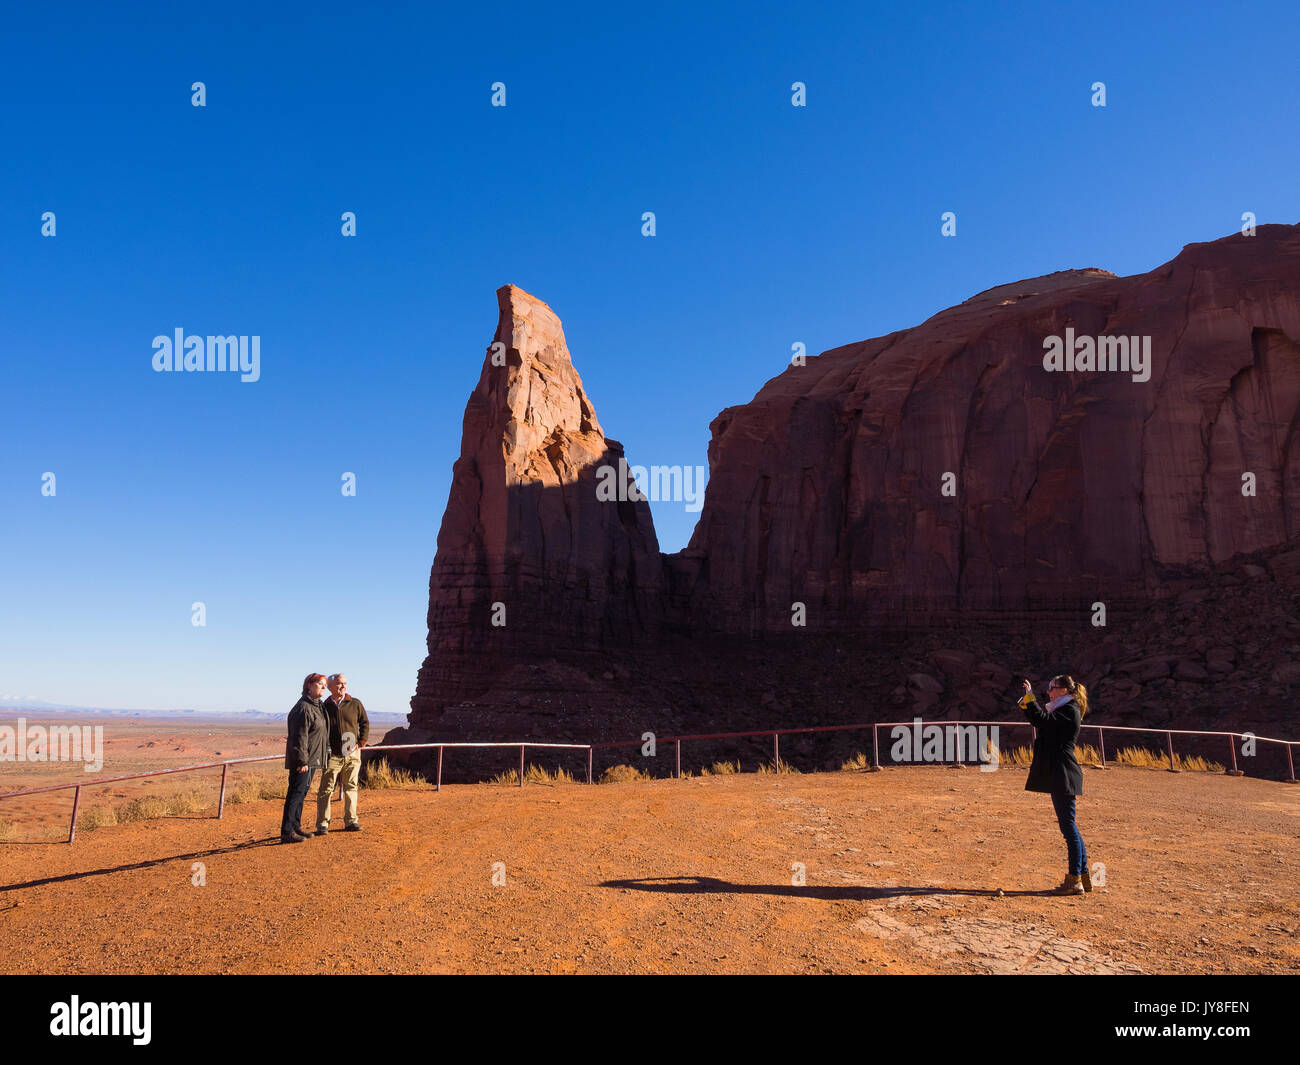 Il Monument Valley, Utah, Stati Uniti d'America. Un turista scatta una fotografia di una coppia in visita presso un Monument Valley viewpoint. Foto Stock